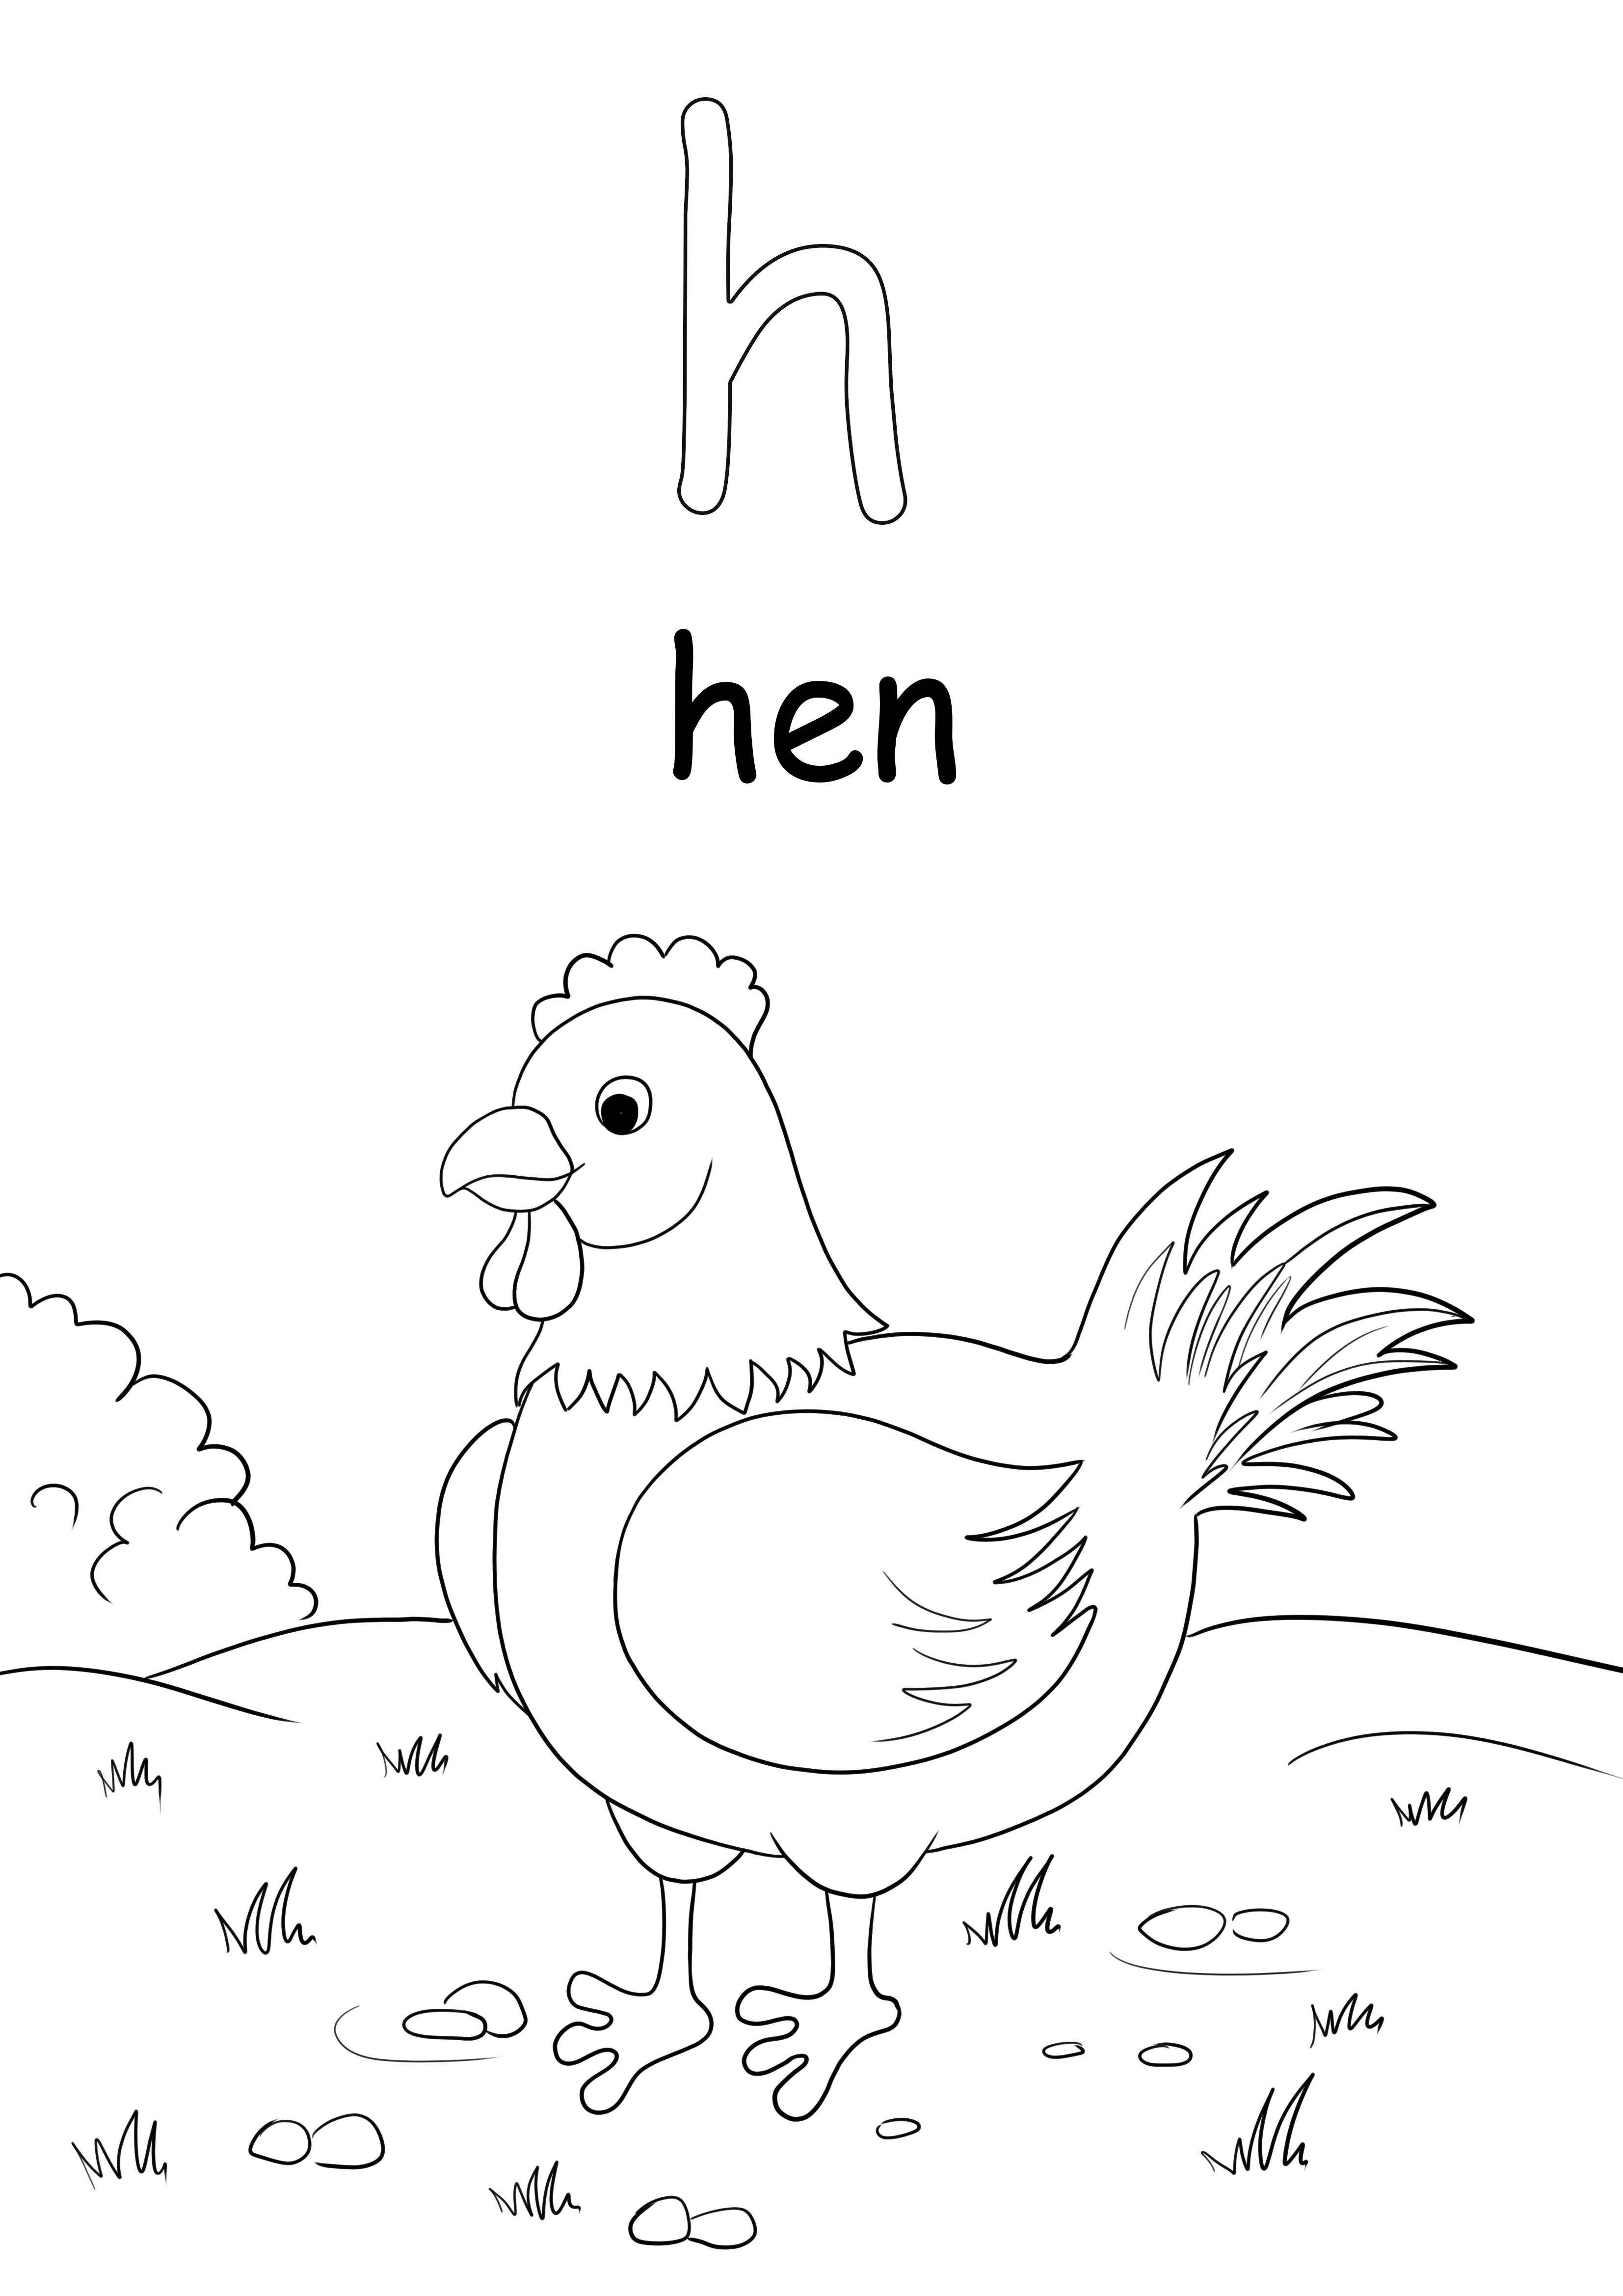 Huruf kecil h adalah untuk kata hen yang dapat dicetak gratis untuk anak-anak